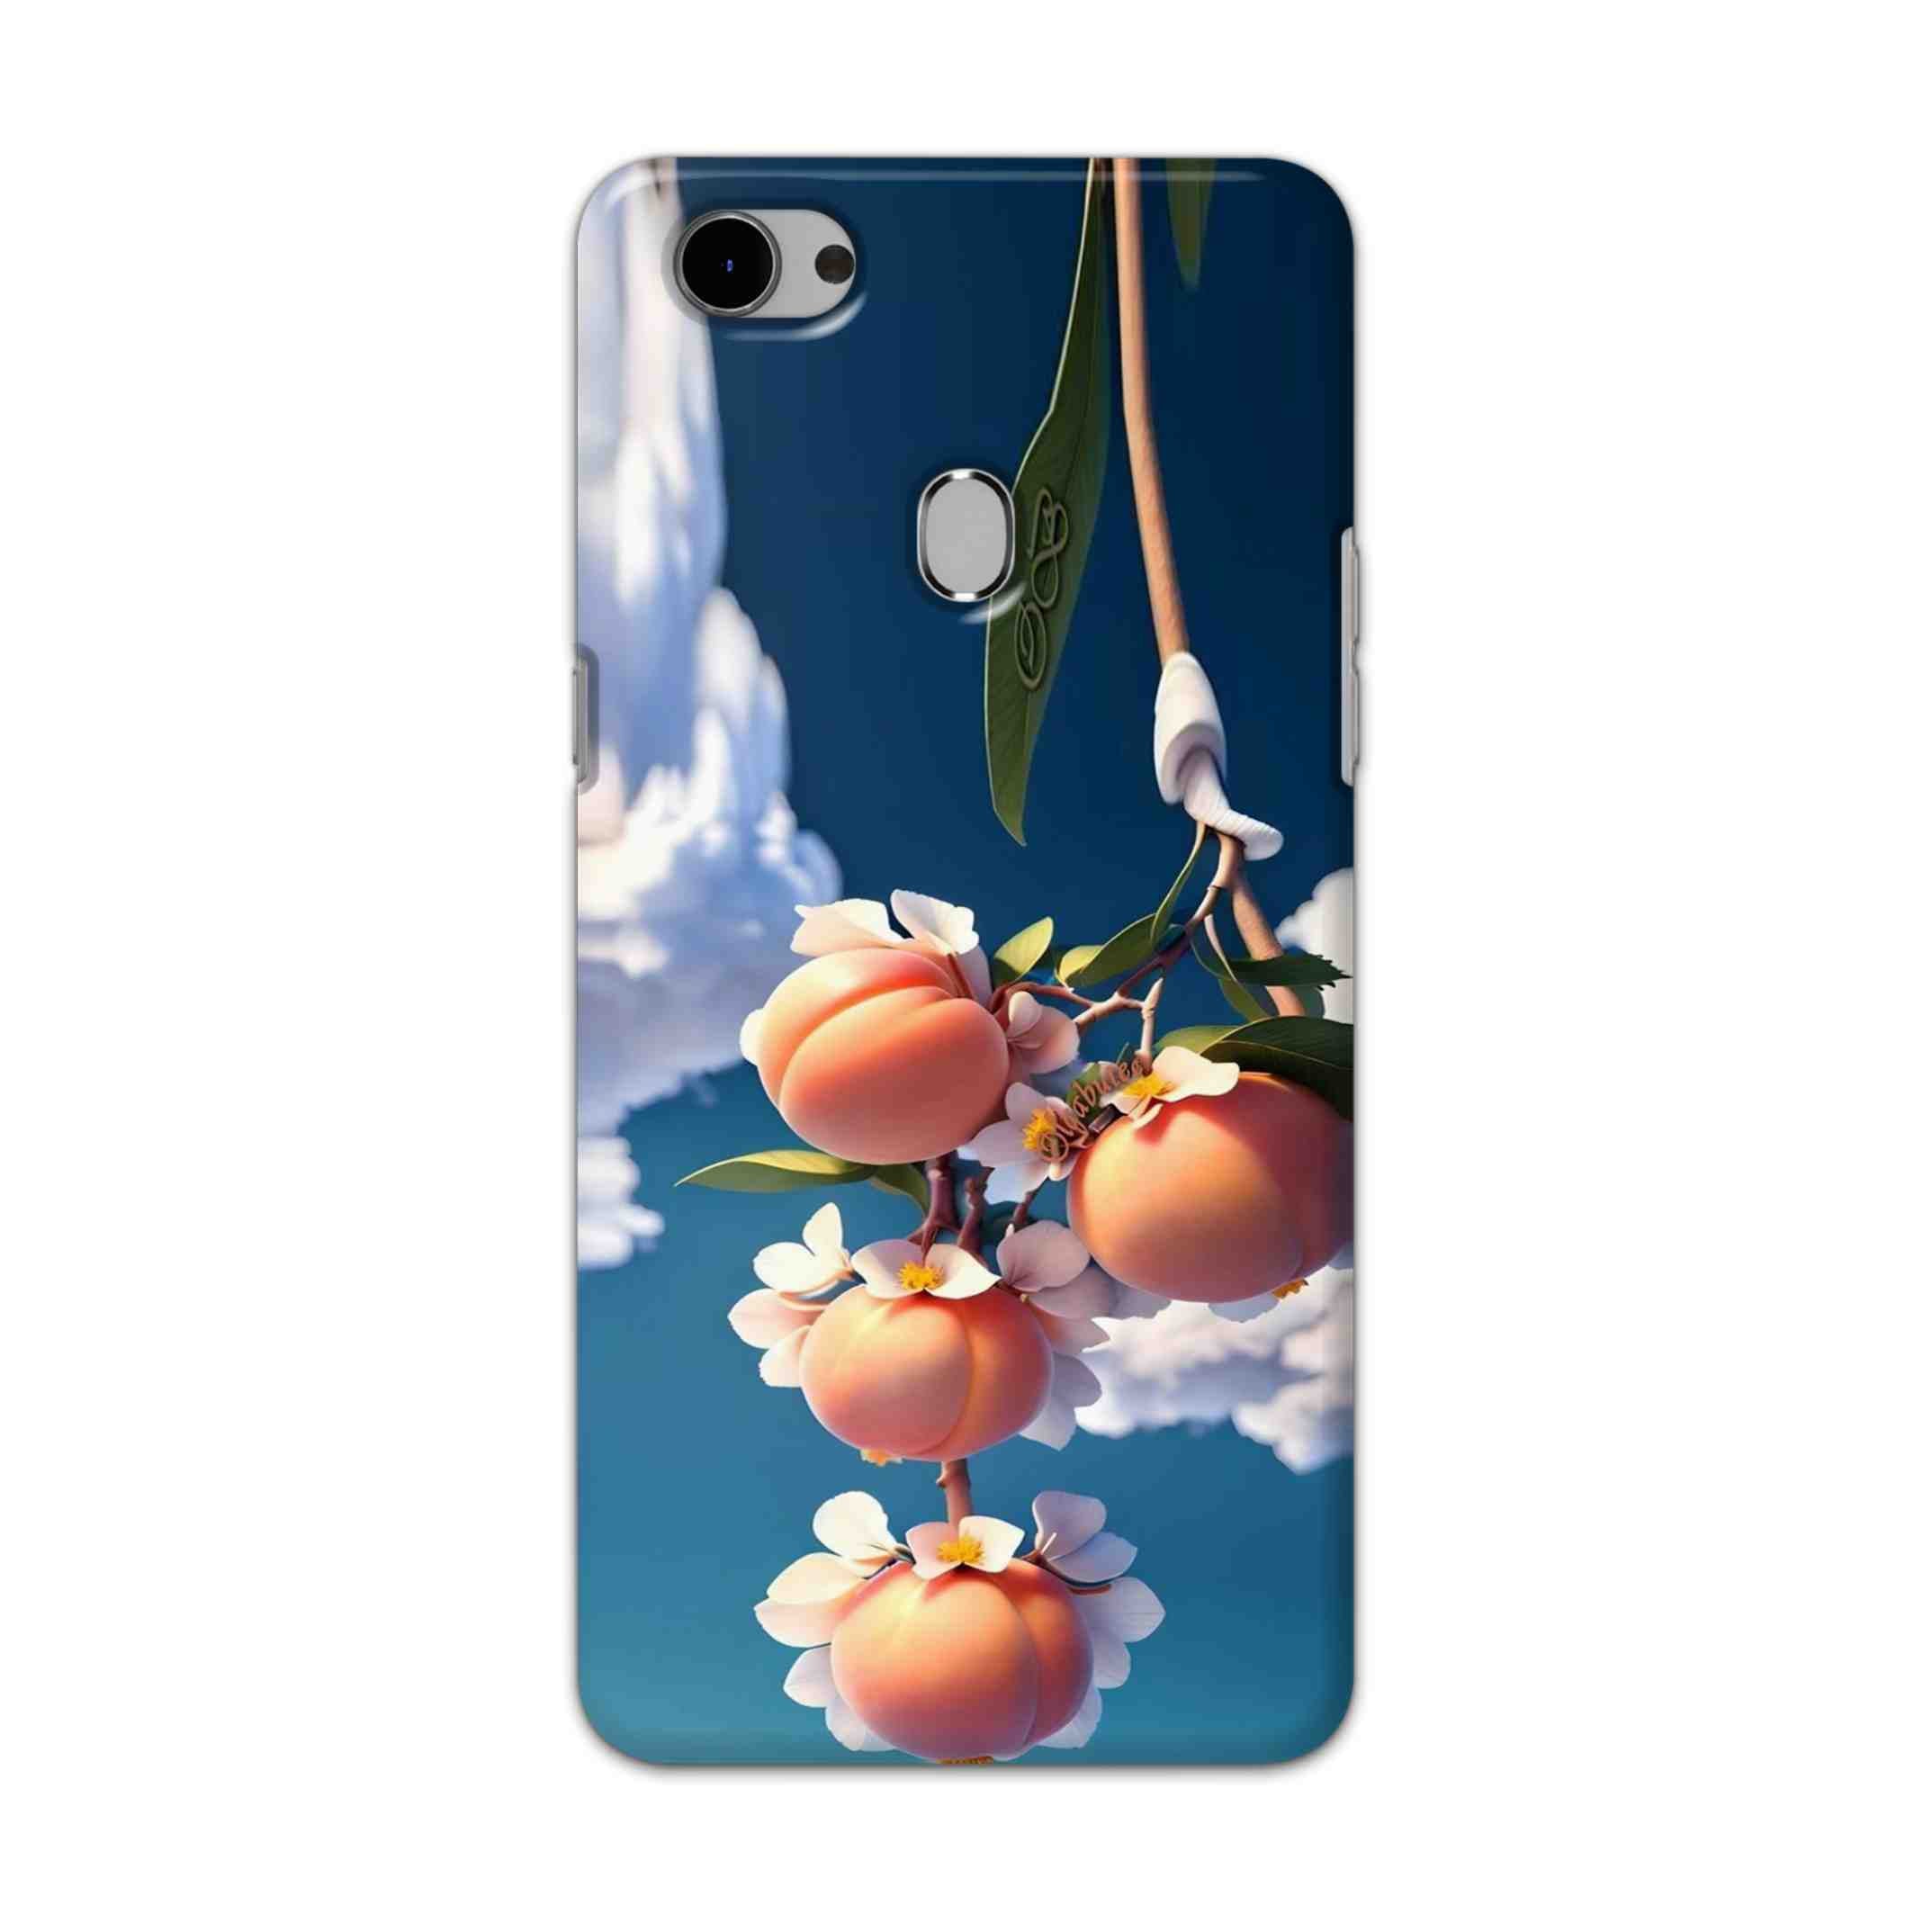 Buy Fruit Hard Back Mobile Phone Case Cover For Oppo F7 Online